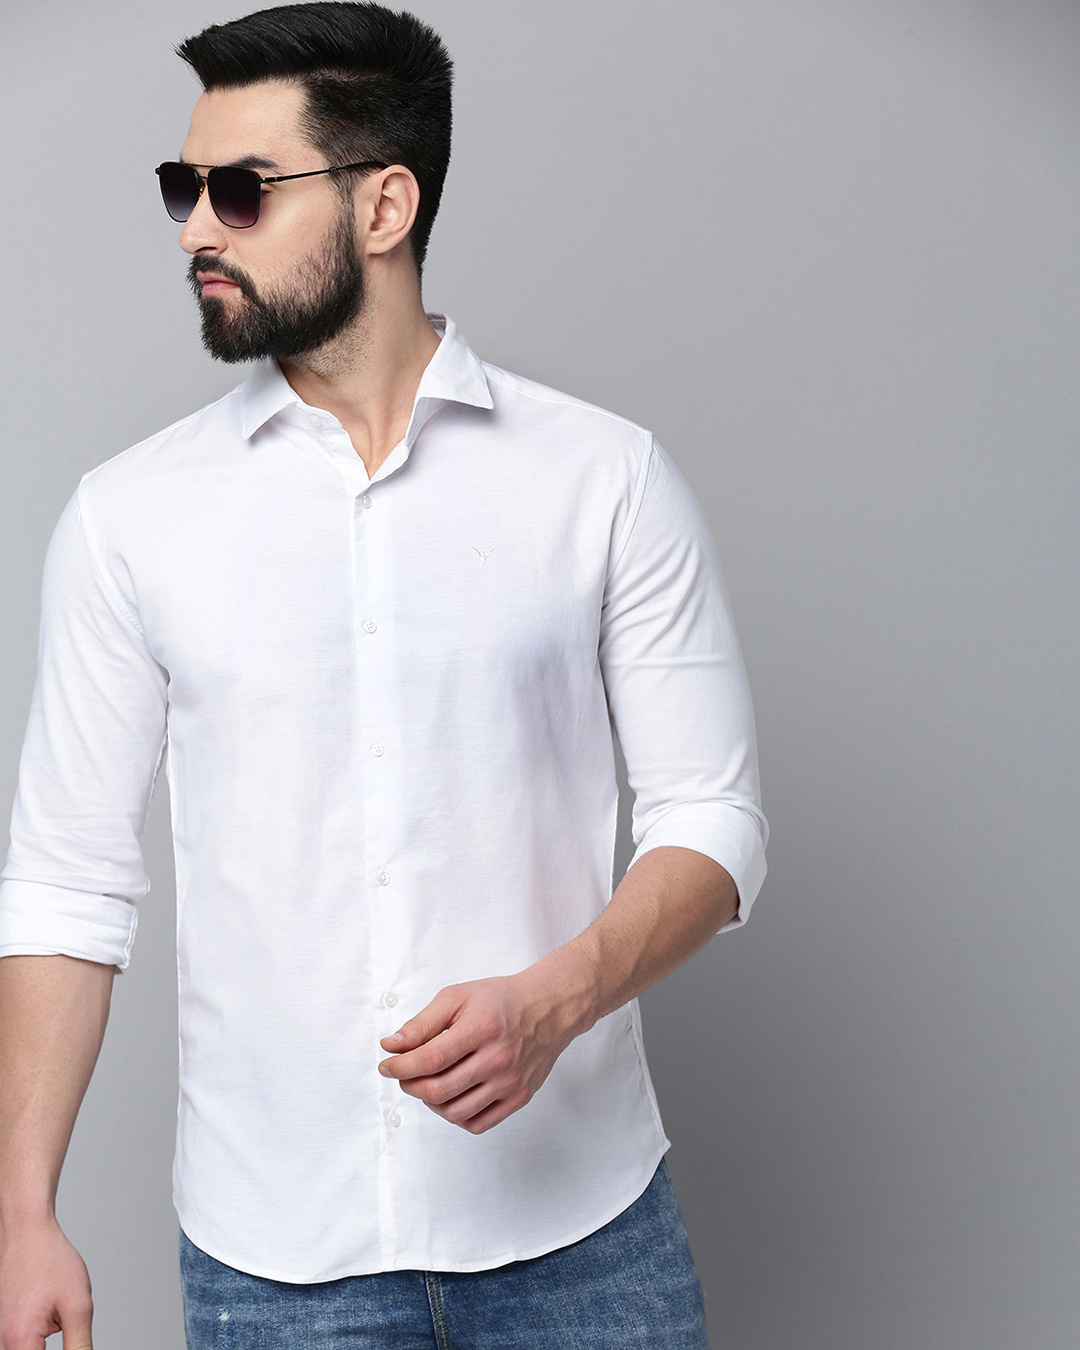 Buy Men's White Slim Fit Shirt for Men White Online at Bewakoof